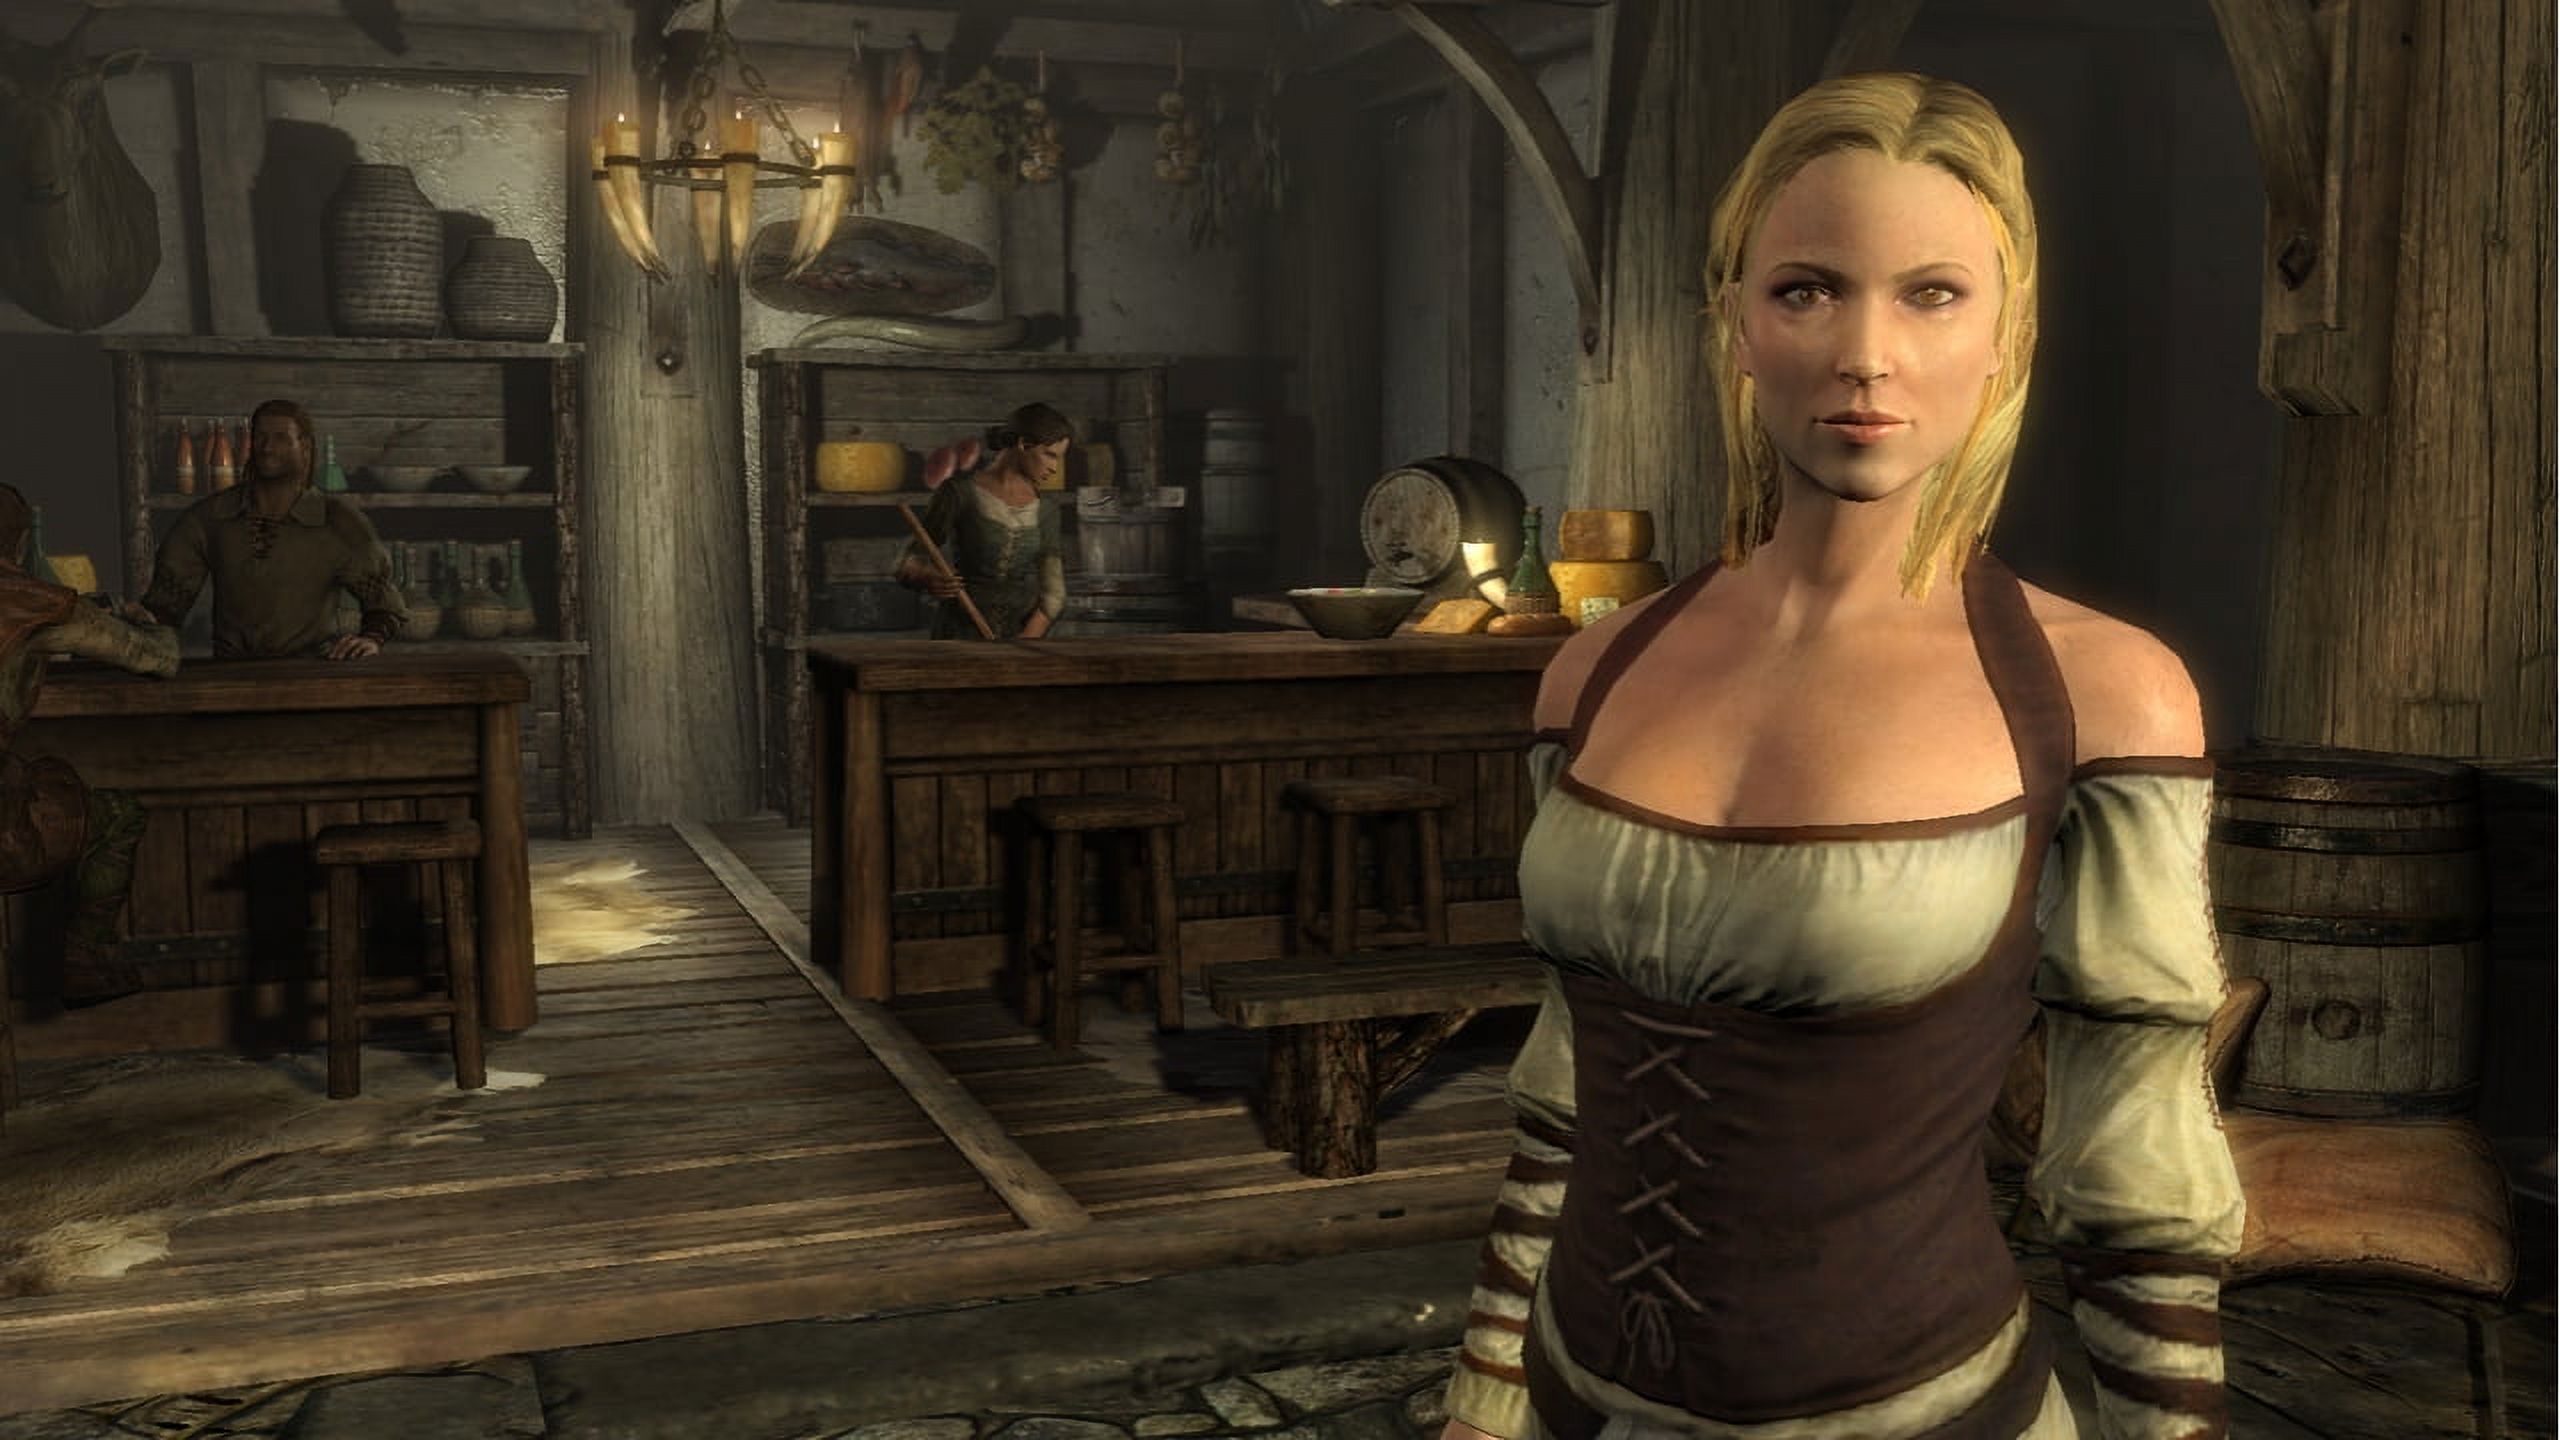 Elder Scrolls V: Skyrim (Xbox 360 / PS3 / PC) Bethesda Softworks - image 4 of 12